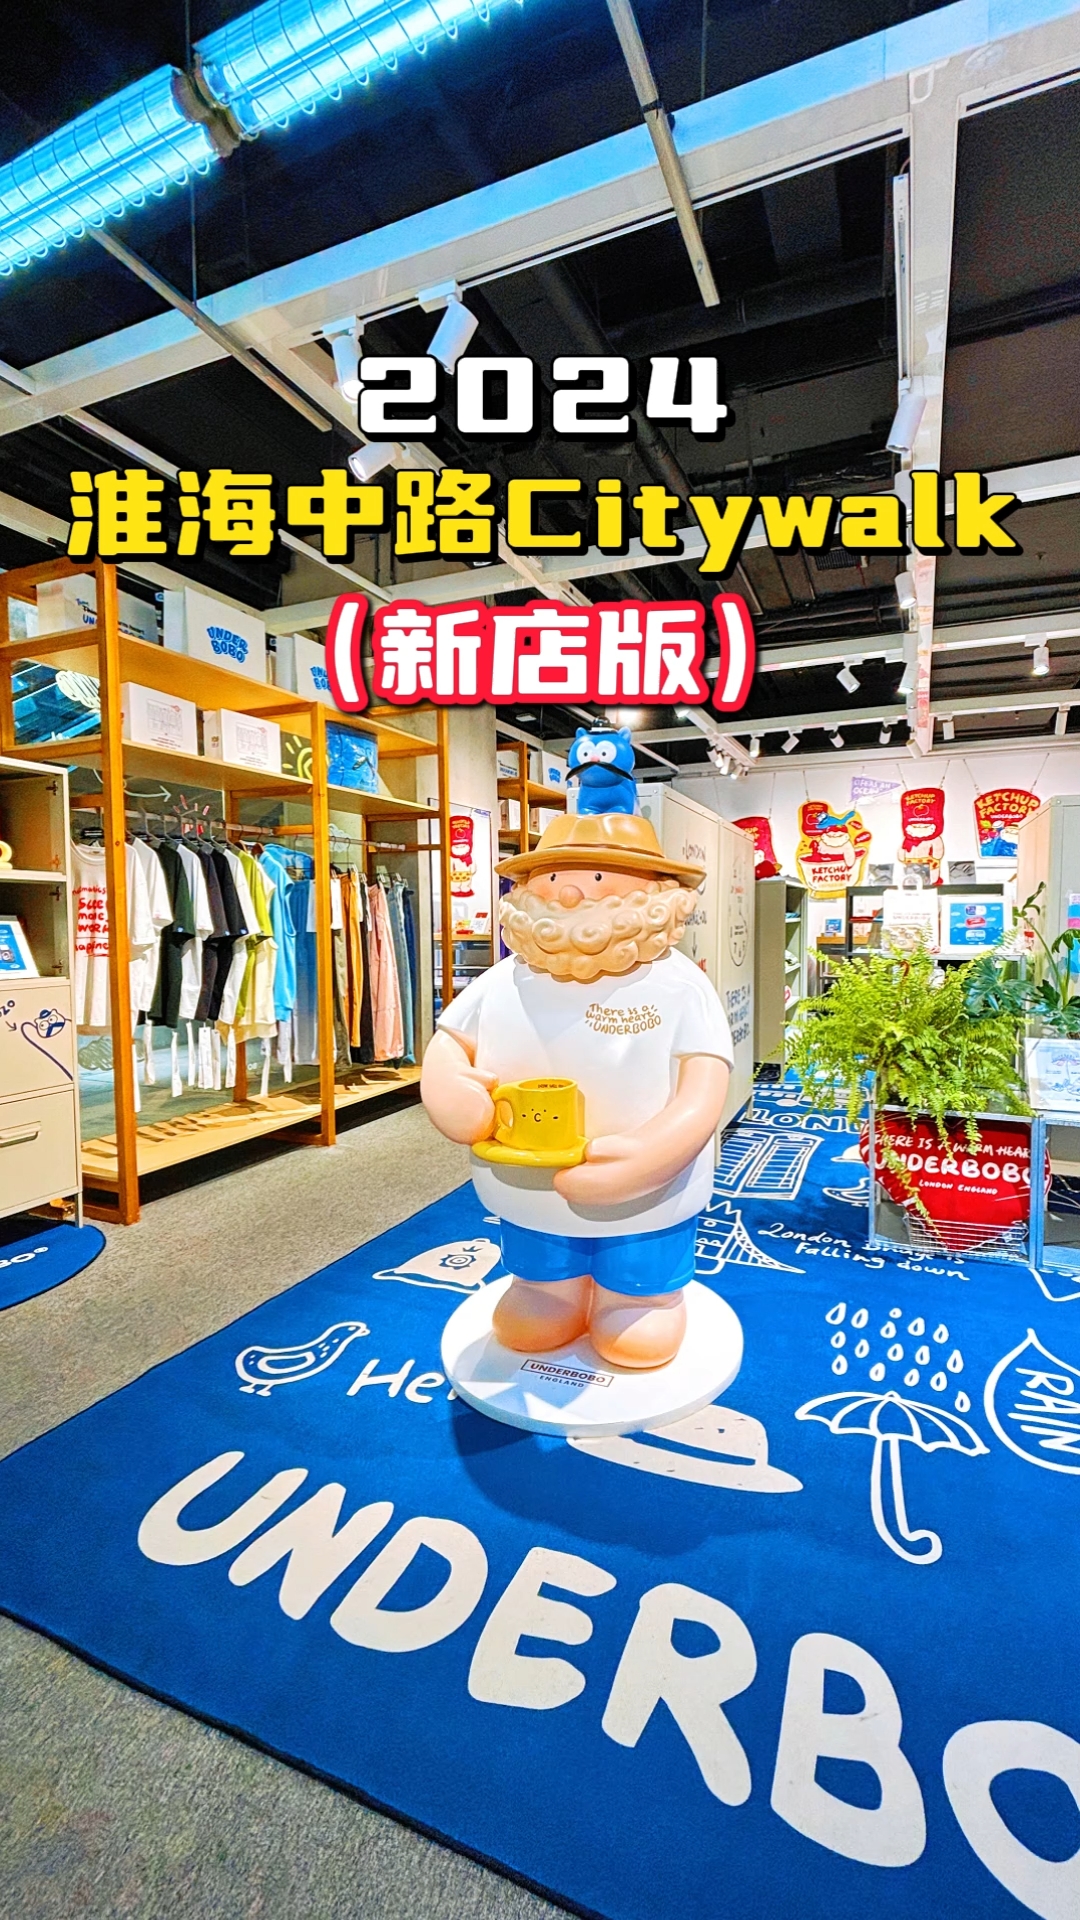 在上海❗️最新淮海中路City walk安排